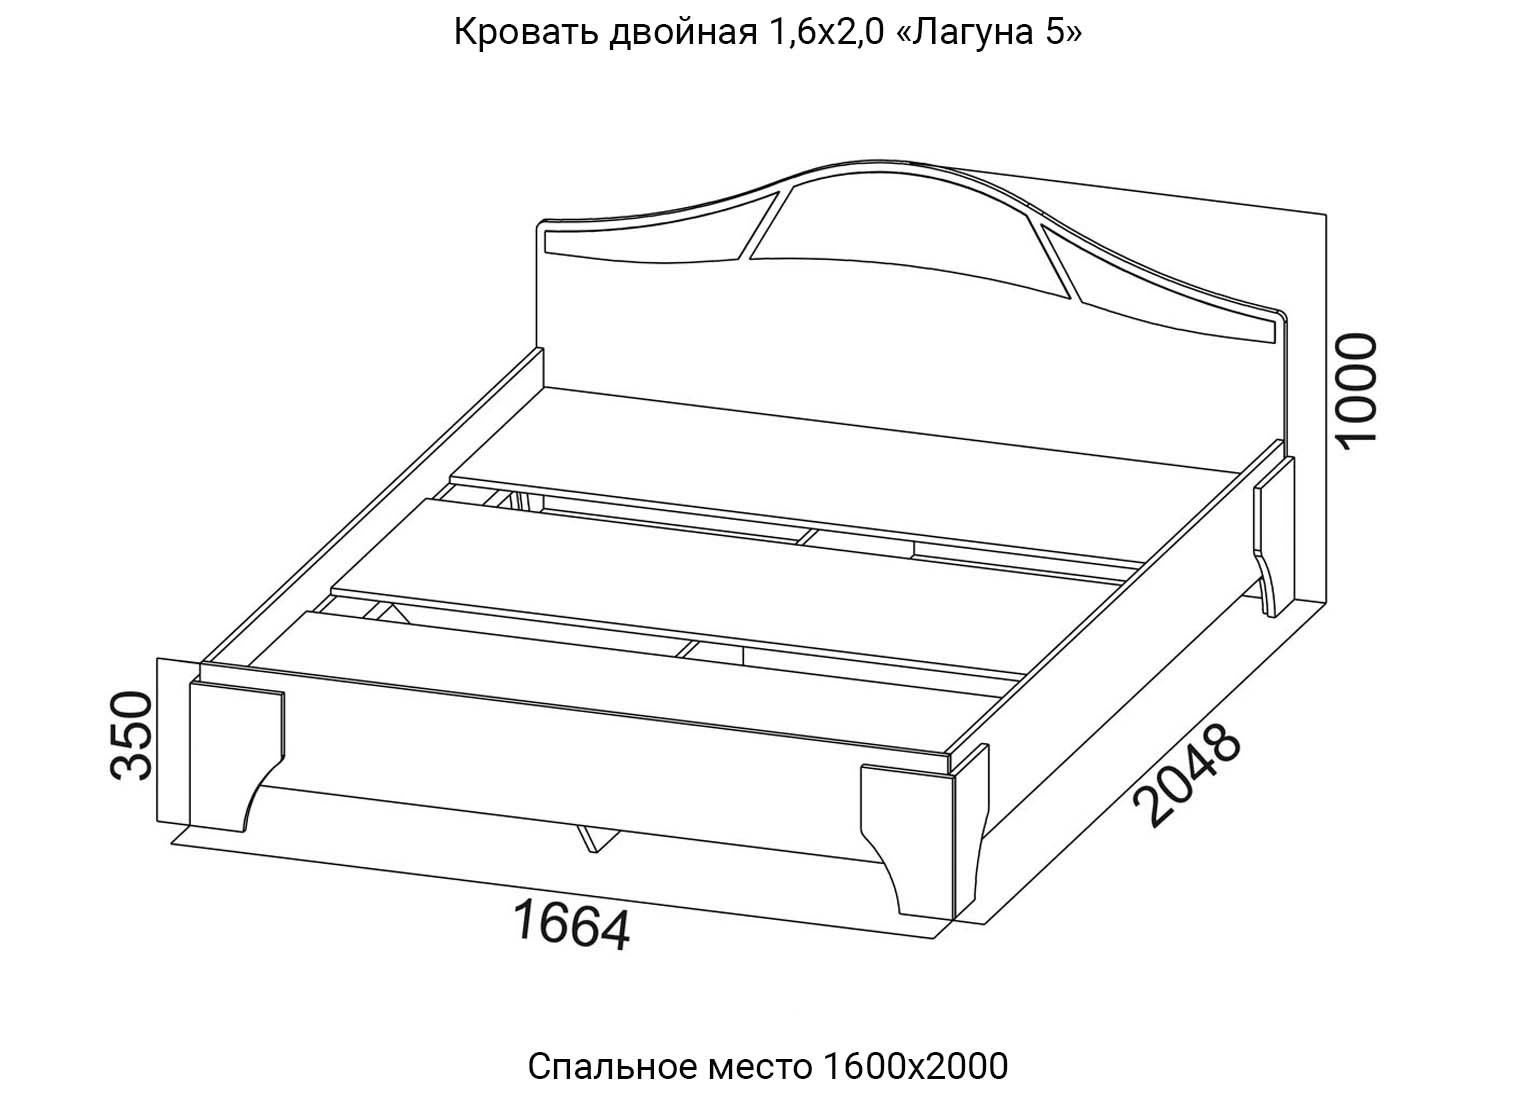 Спальня Лагуна 5 Кровать двойная 1,6х2,0 схема SV-Мебель